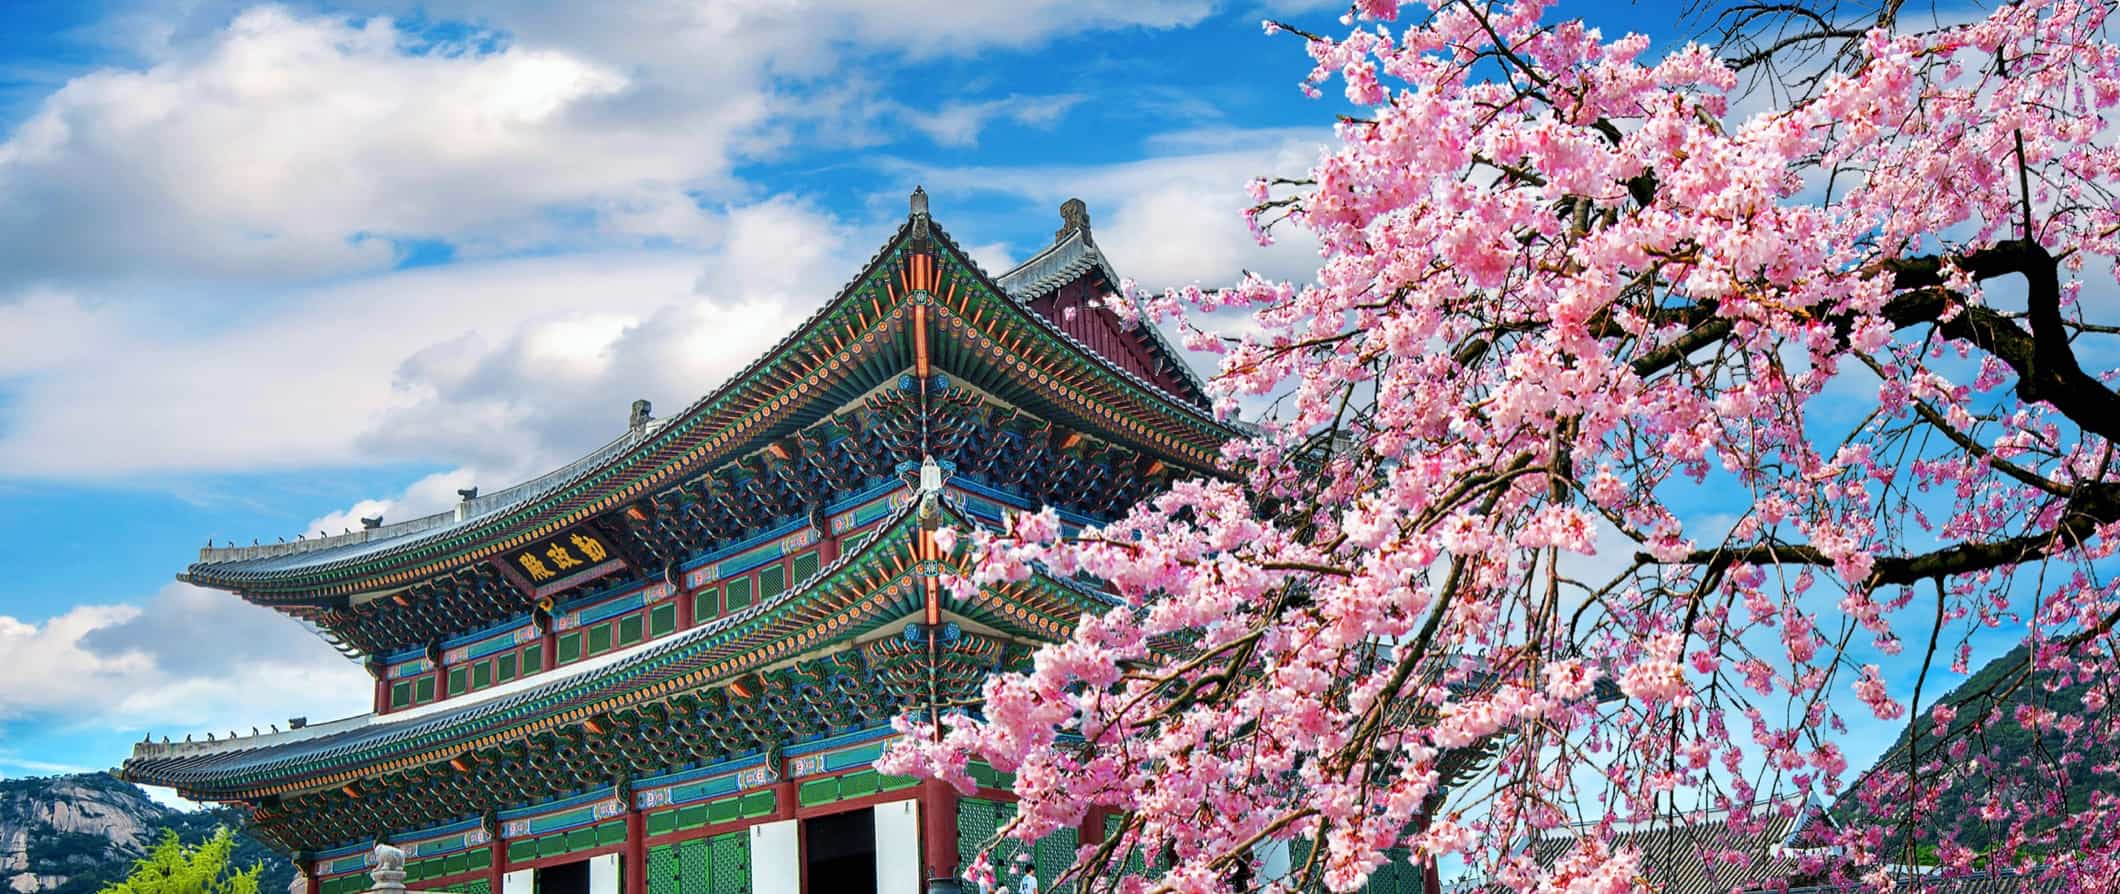 Templo colorido na Coréia do Sul, ao lado do sakura florido em um dia ensolarado brilhante